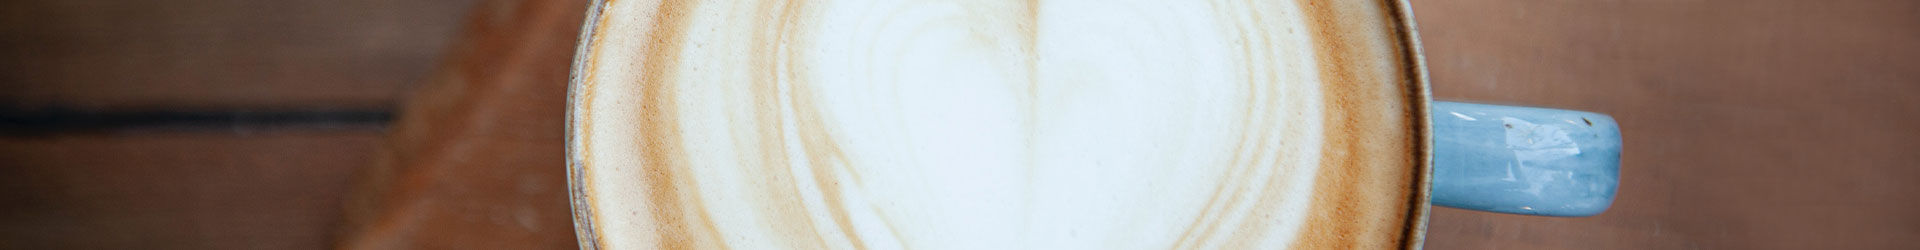 Latte-Art-Herz Cappuccino in blauer Tasse auf brauner Holzfläche